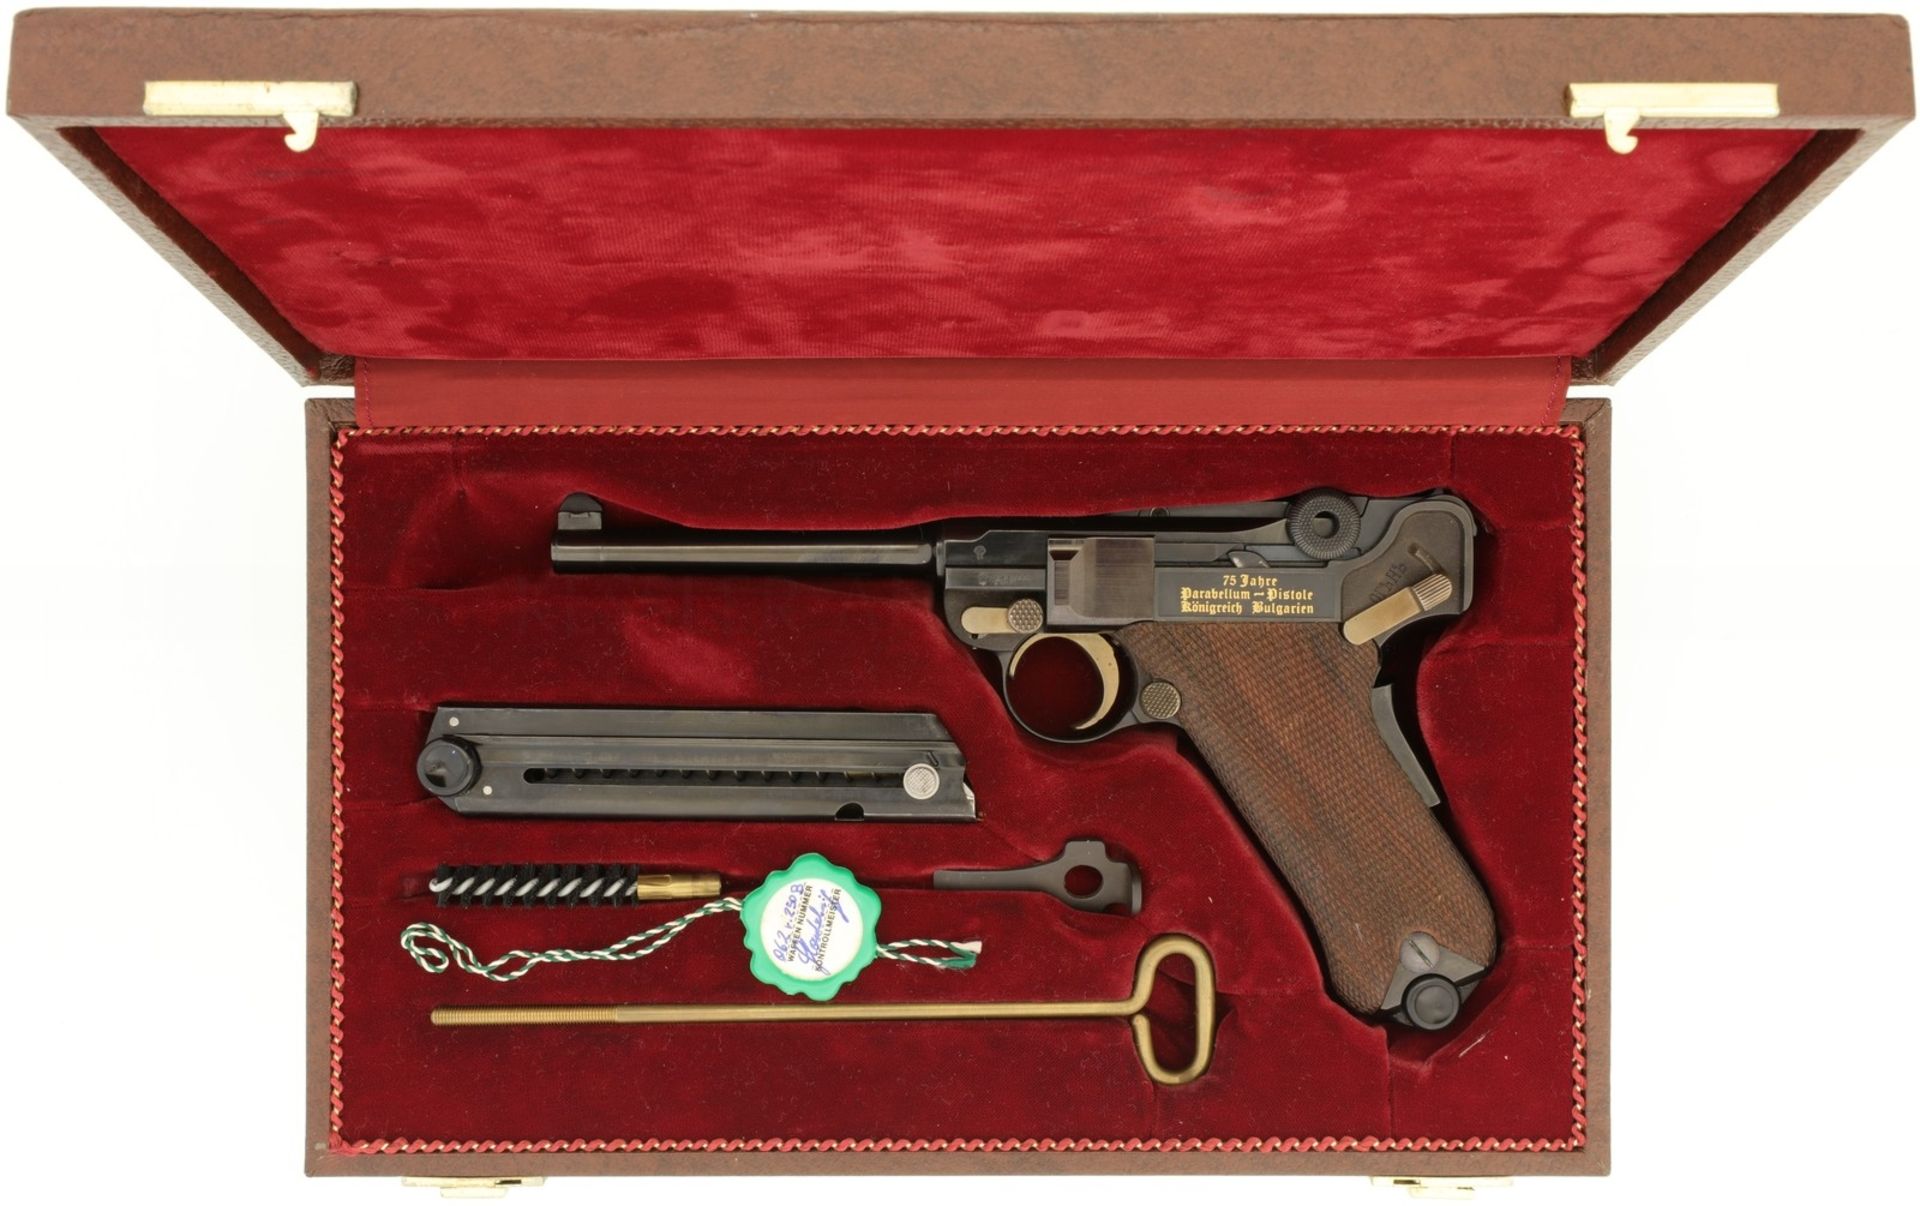 Jubiläumspistole, Mauser Parabellum 75 Jahre Parabellum-Pistole Königreich Bulgarien, Kal. 7.65mmPar